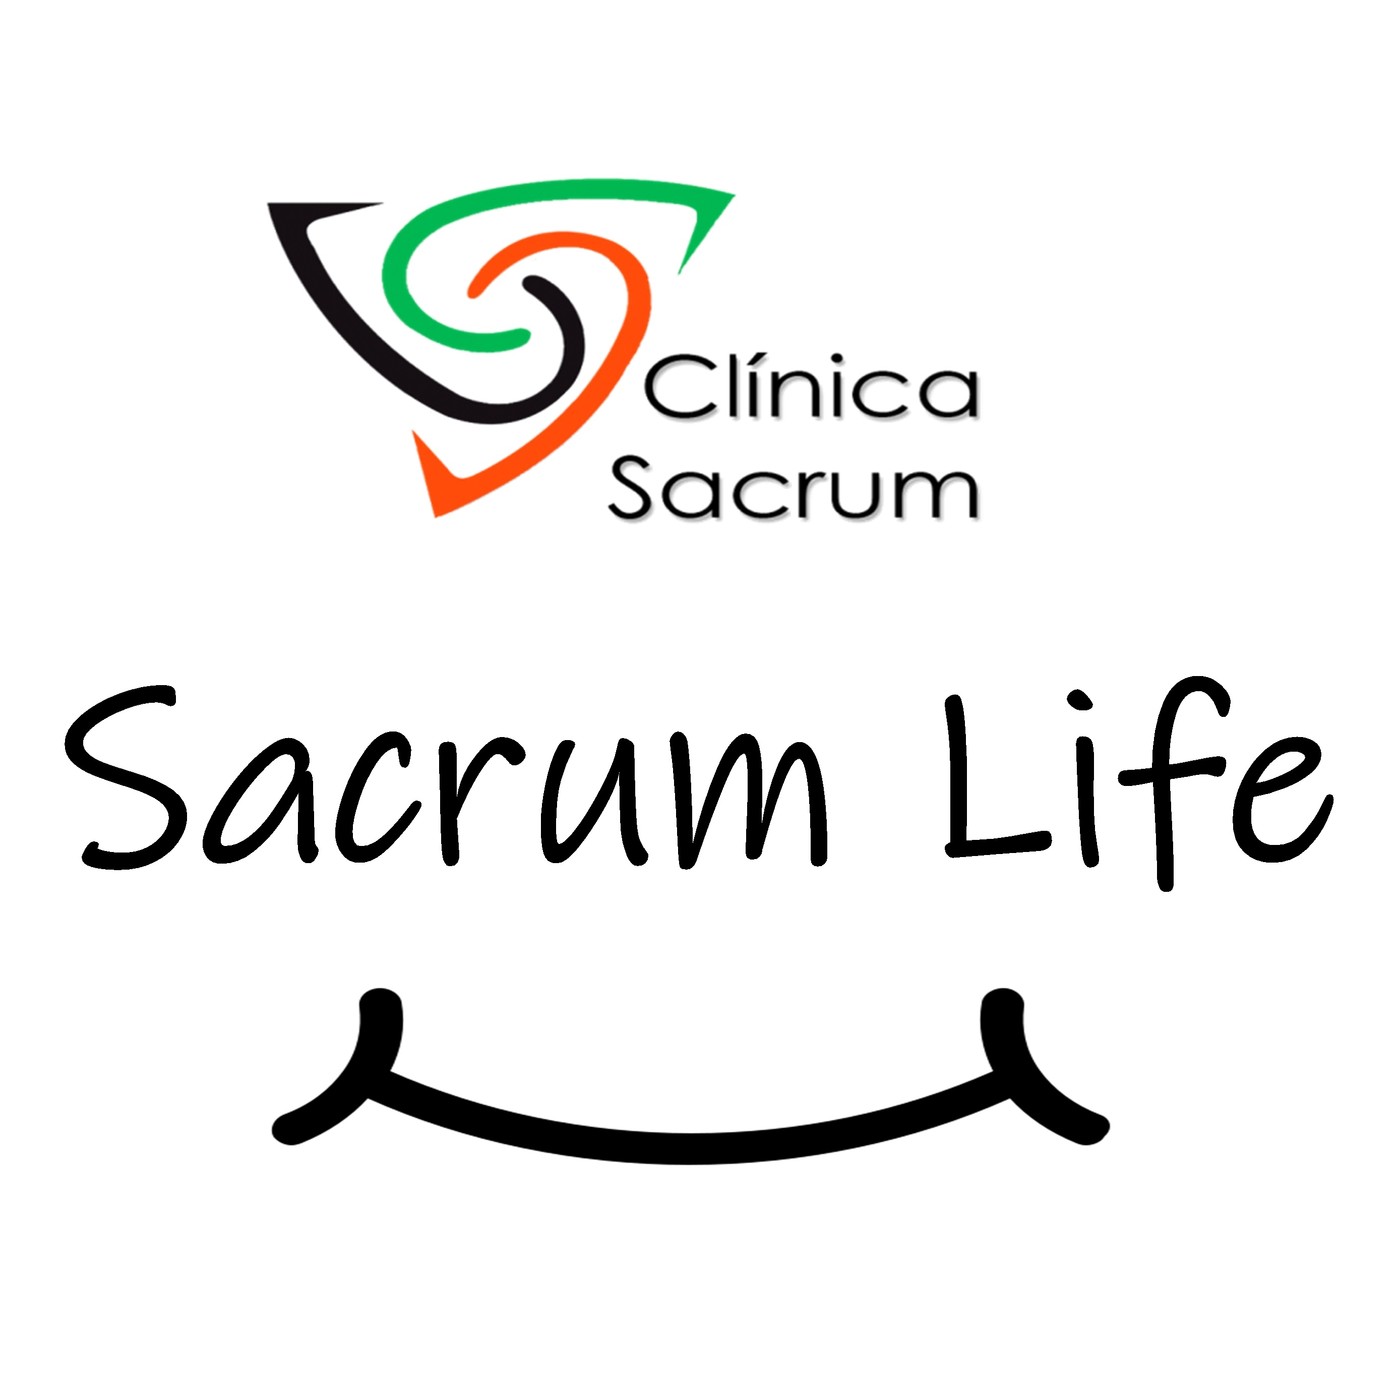 #1 Postura. Sacrum Life. Clínica Sacrum